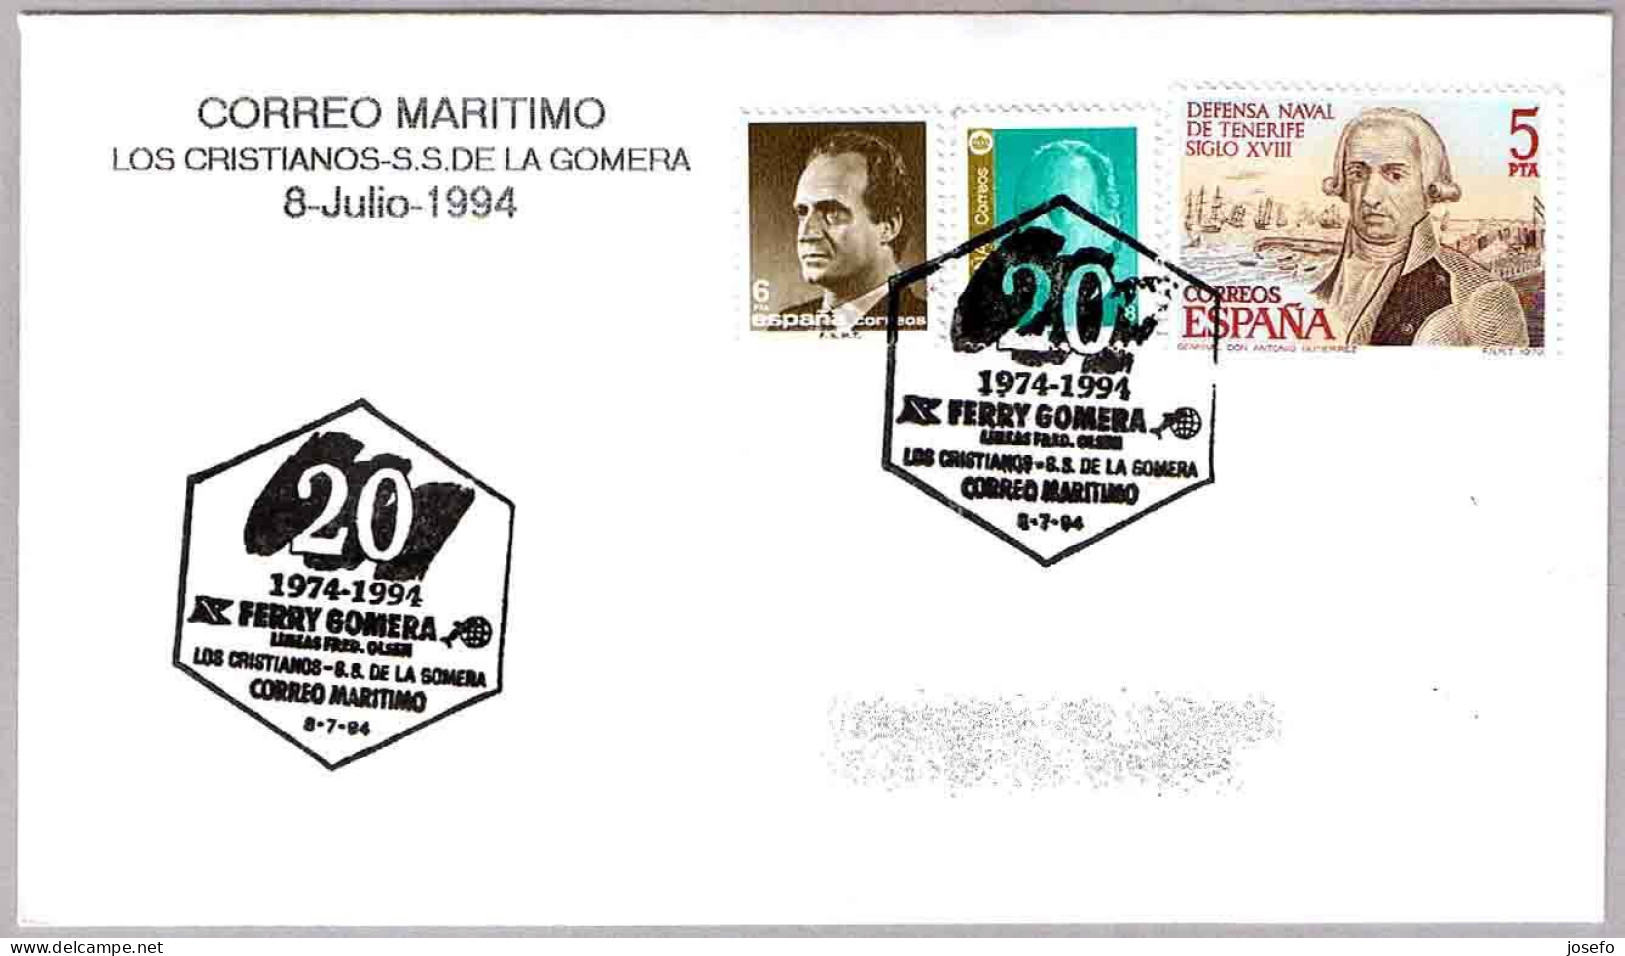 CORREO MARITIMO Los Cristianos - S.S.de La Gomera. FERRY GOMERA. 1994. Canarias - Posta